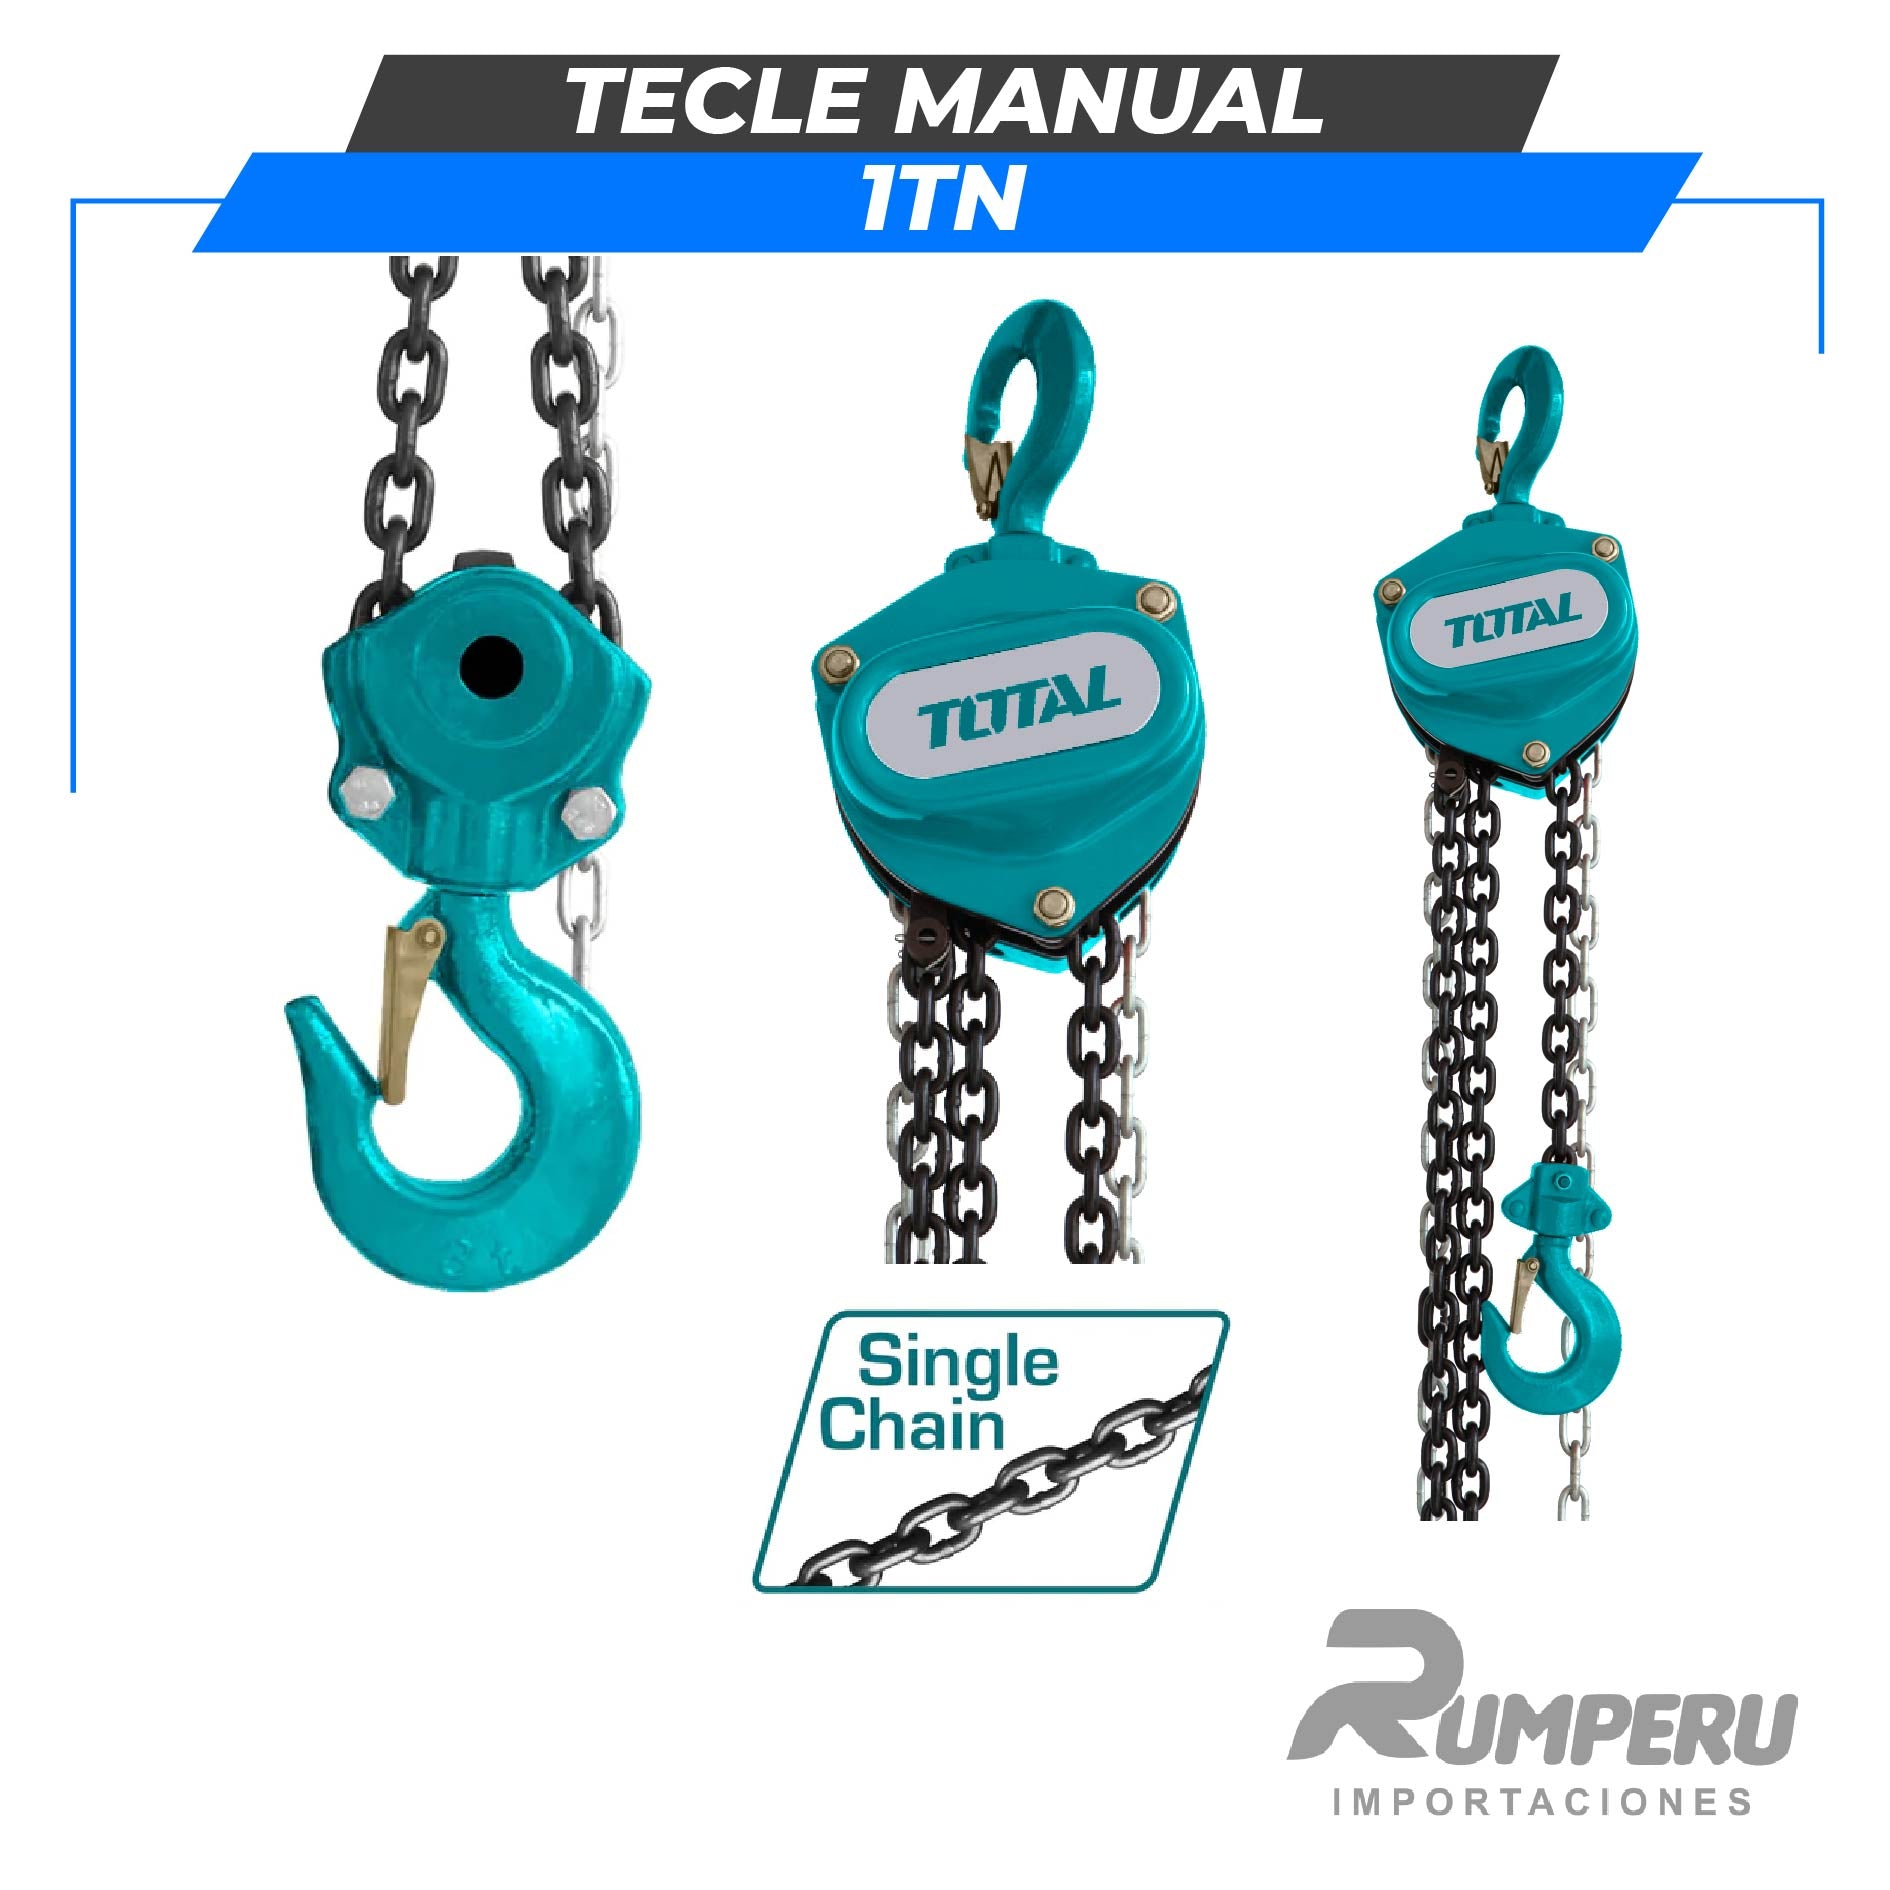 Tecle Manual 1 Tn